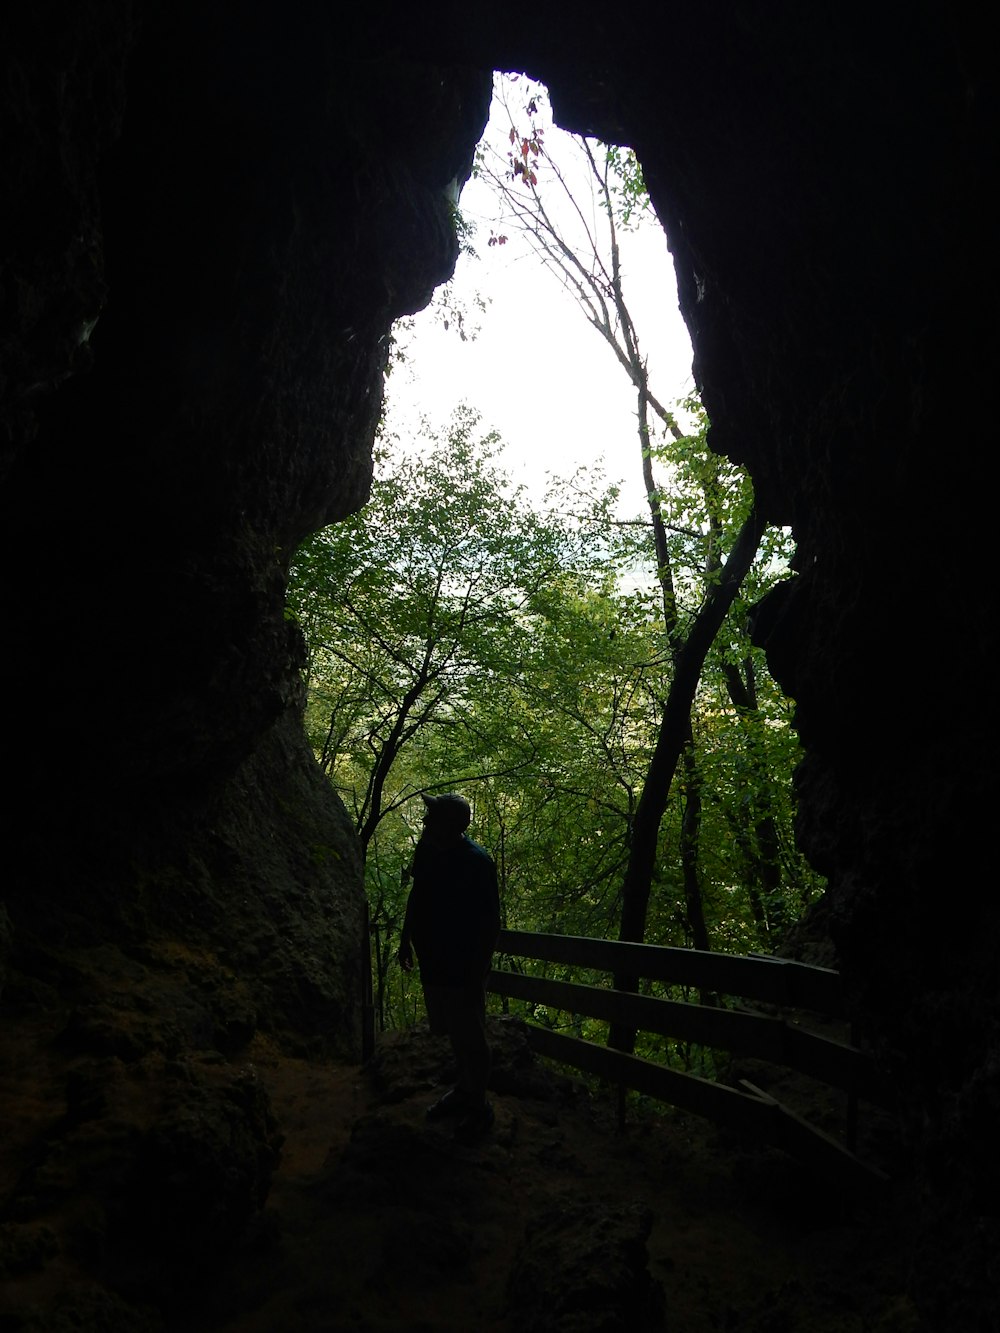 Una persona parada en una cueva